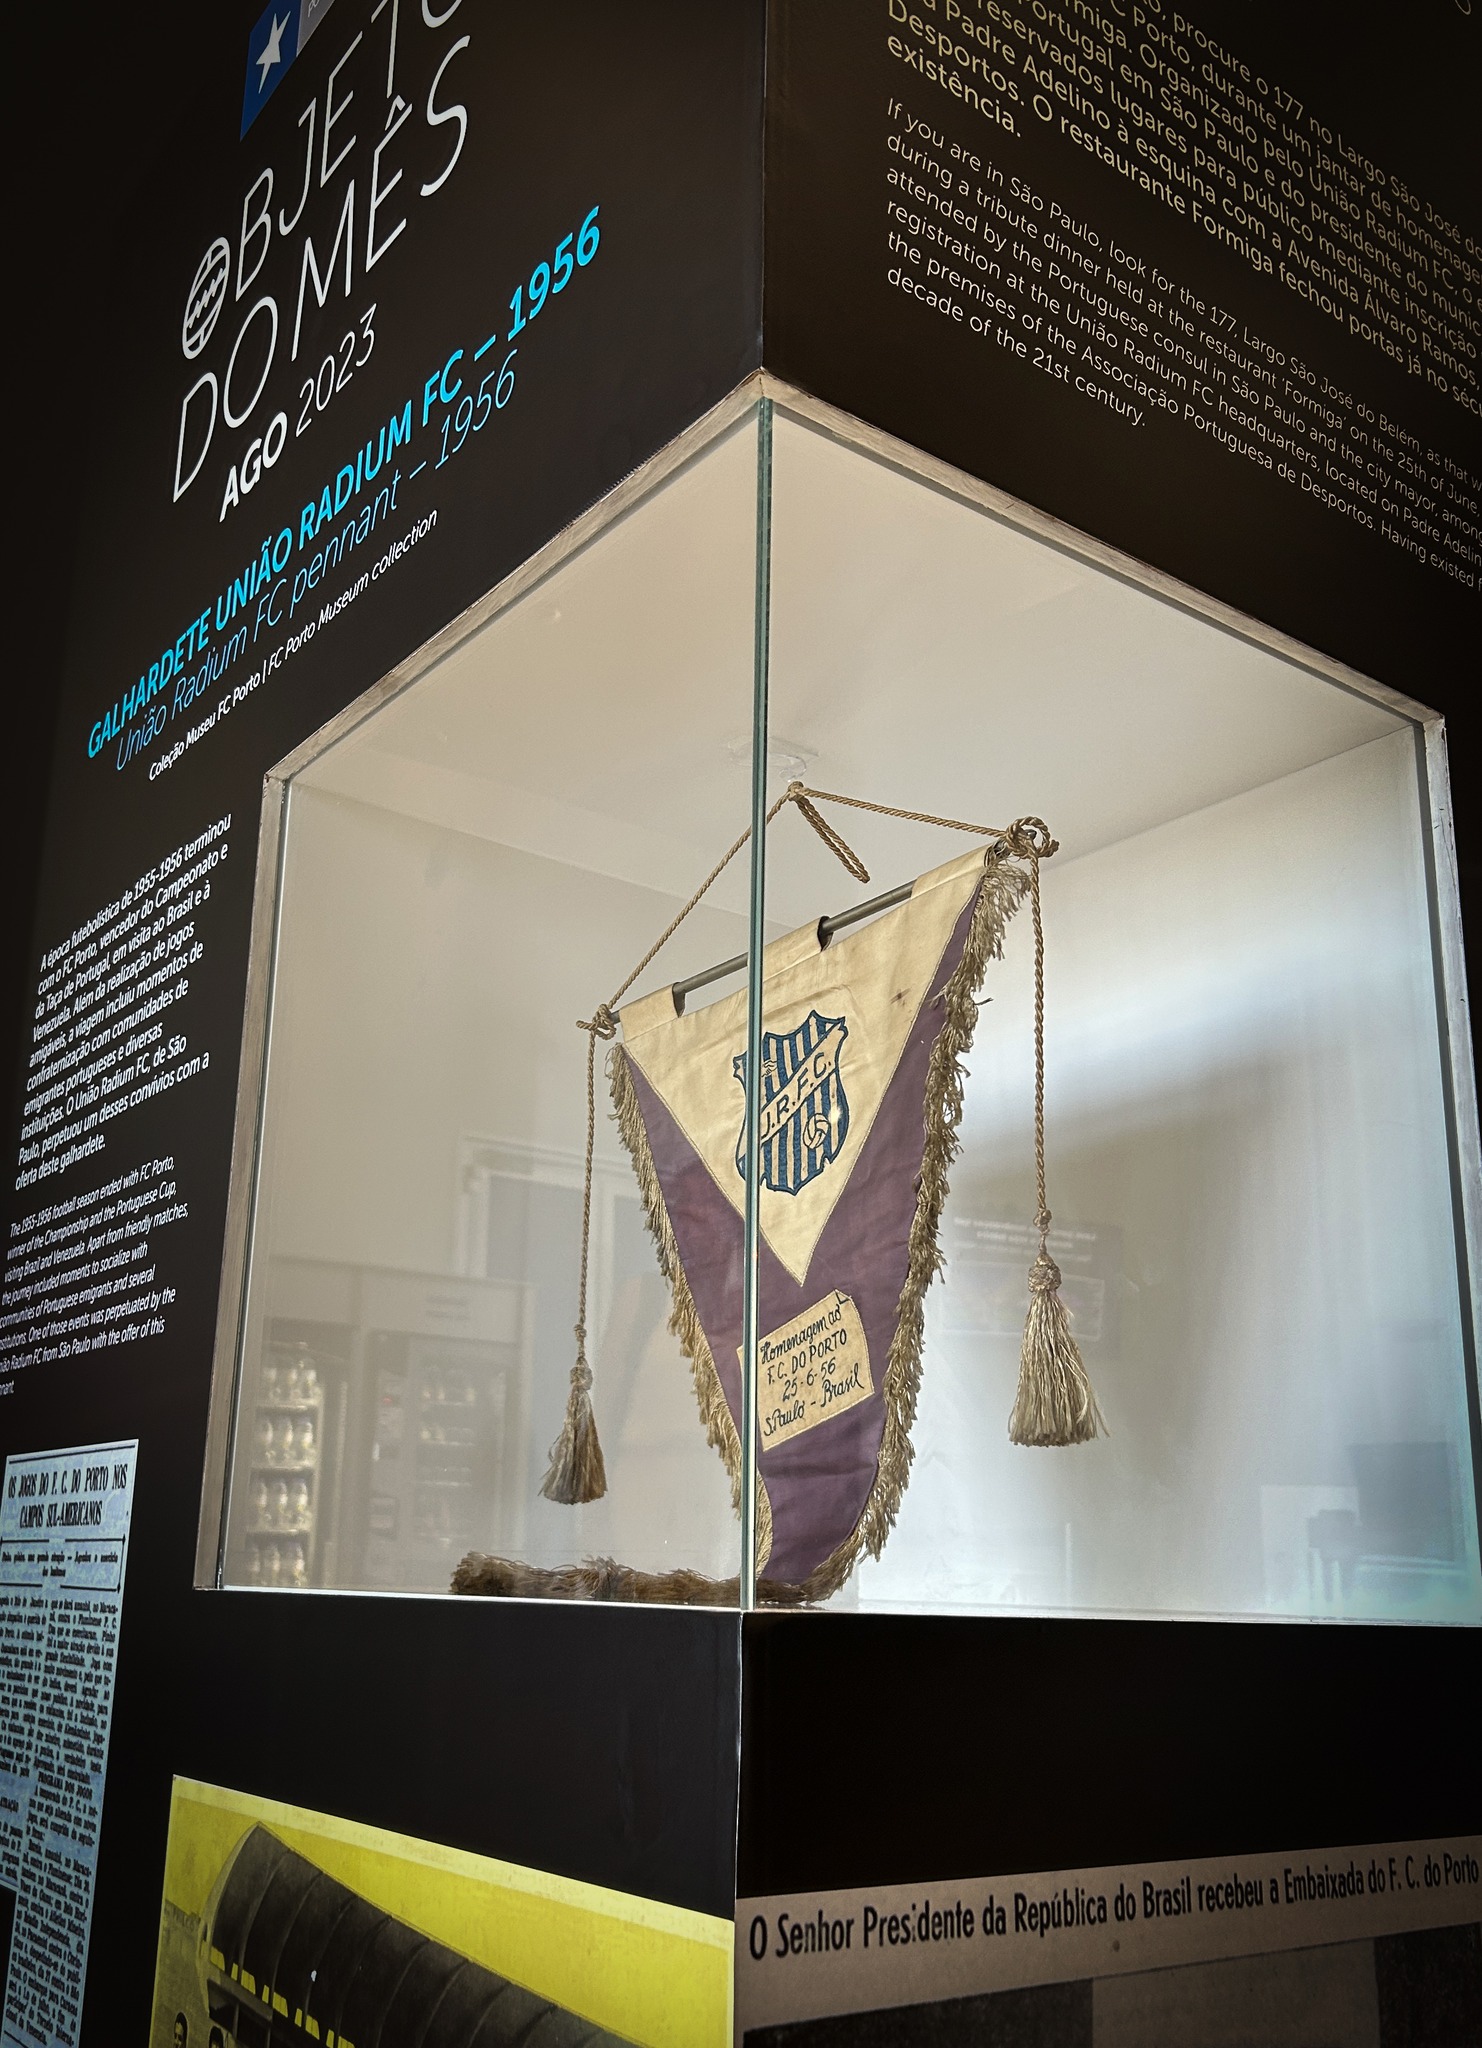 Memória Portista: Objeto do Mês do Museu do FC Porto fora do espaço do  museu – Peça de Agosto em exposição no átrio da loja e museu do Dragão